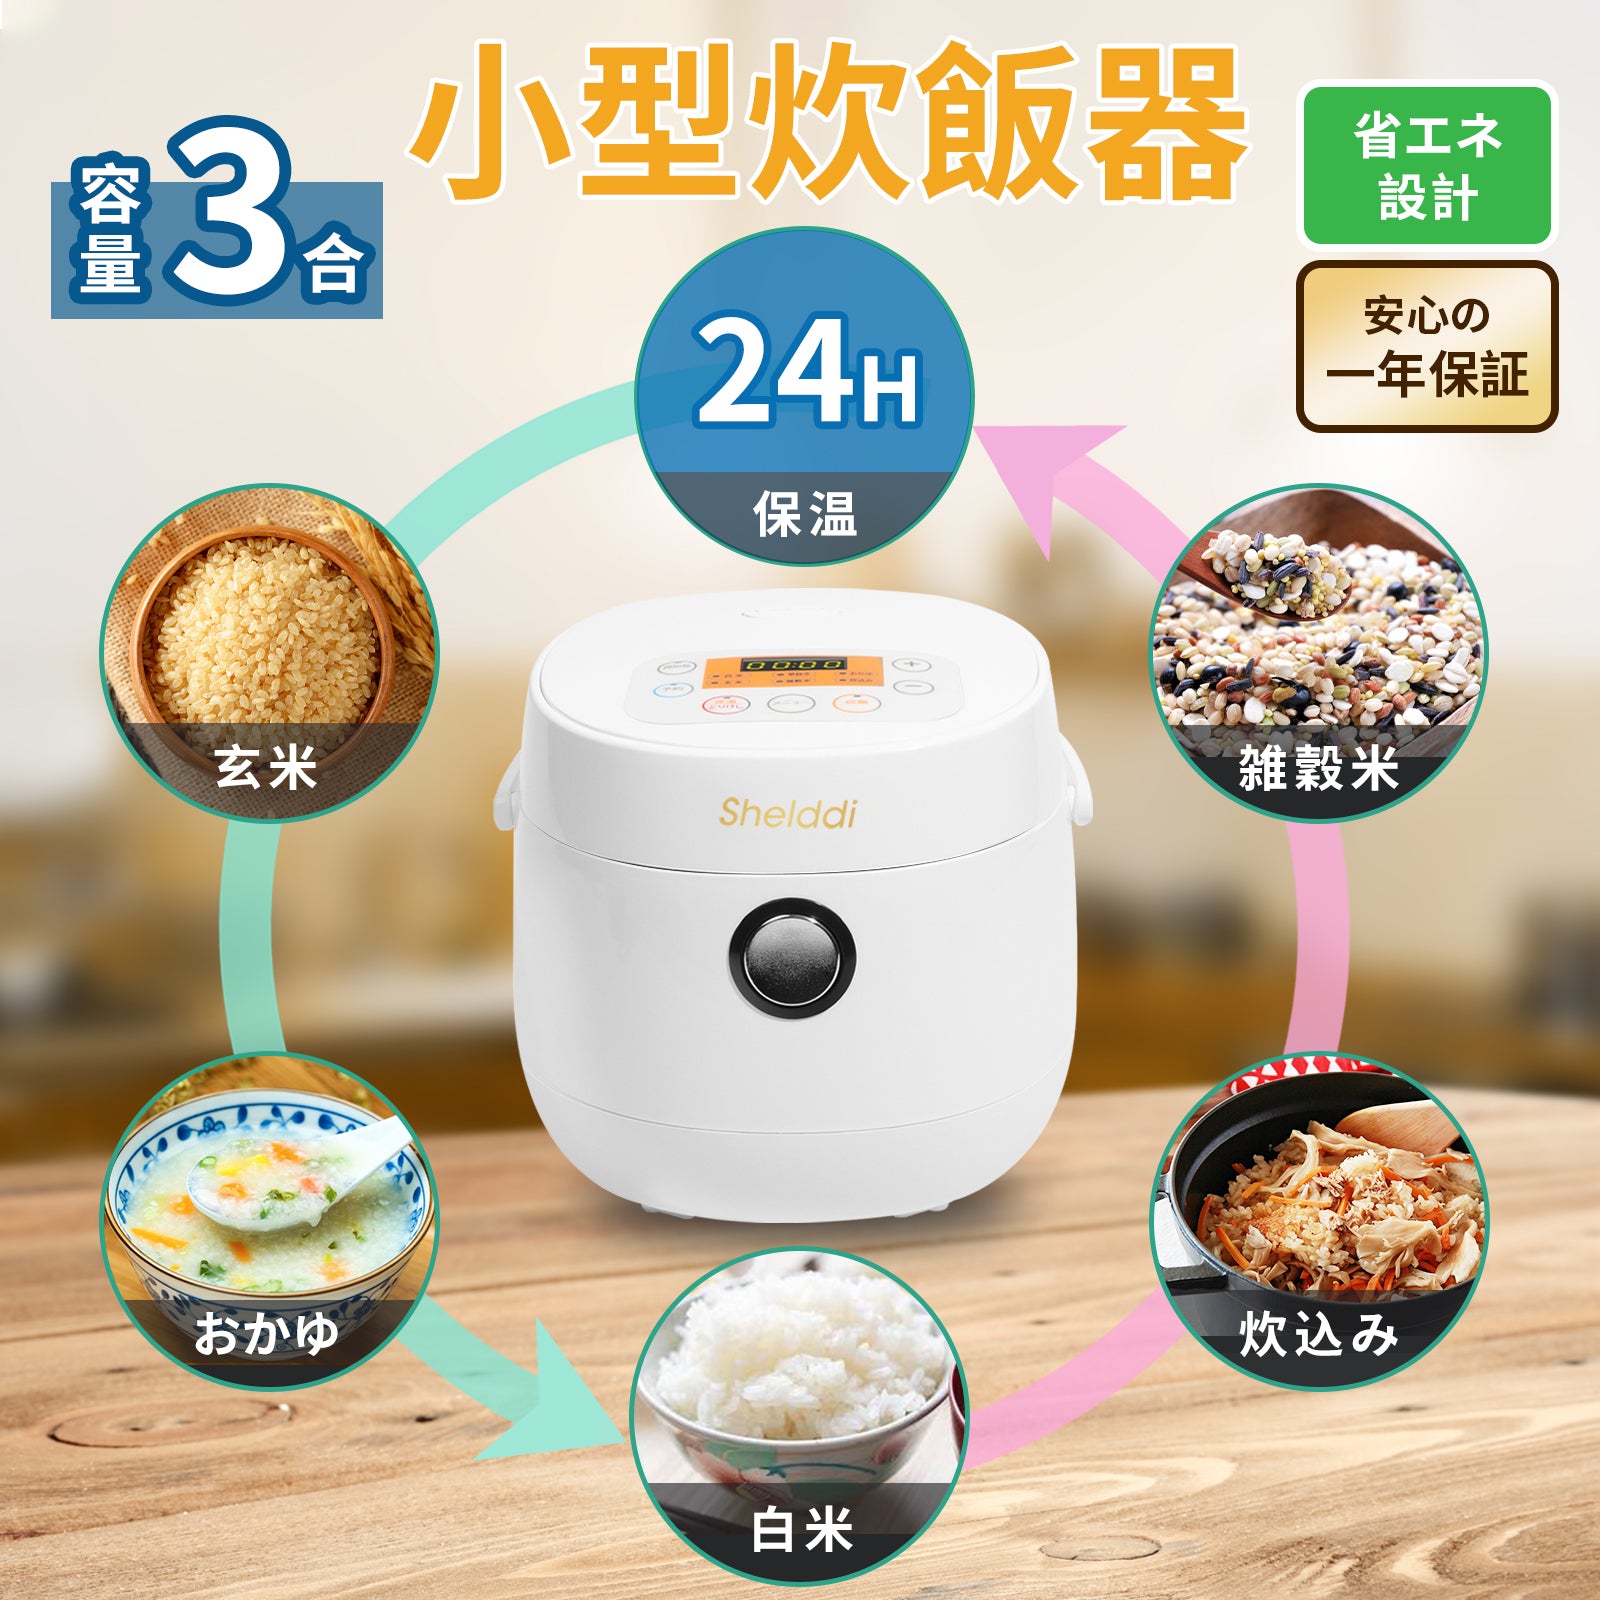 【新品未使用】ミニ炊飯器 マイクロ炊飯器 1人暮らし 0.5合~ 3合